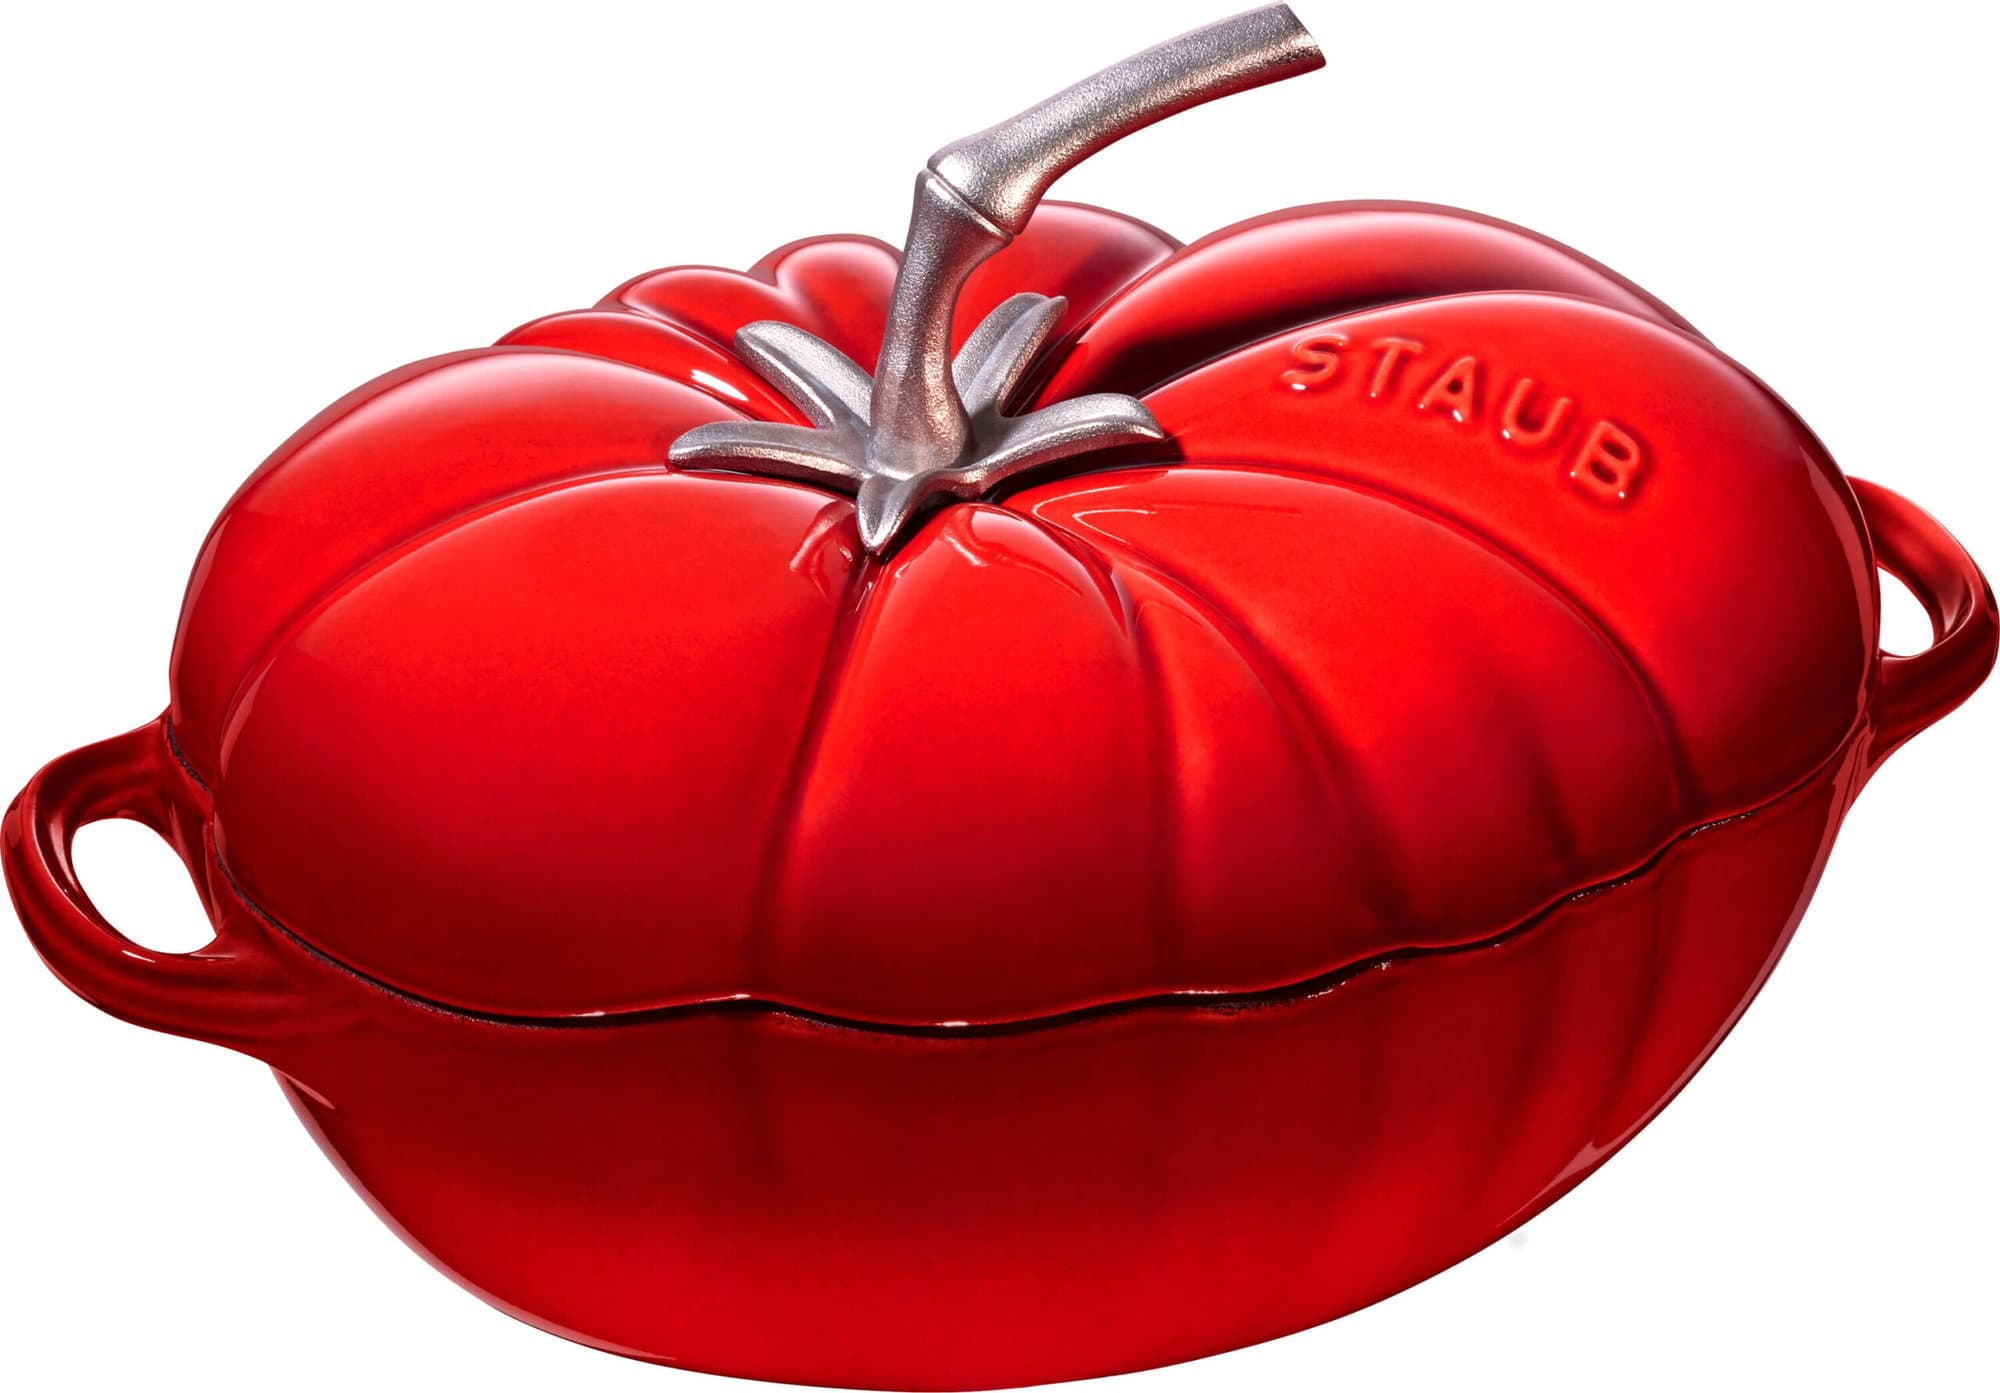 Zdjęcie Garnek żeliwny owalny pomidor Staub – 2.5 ltr, Czerwony